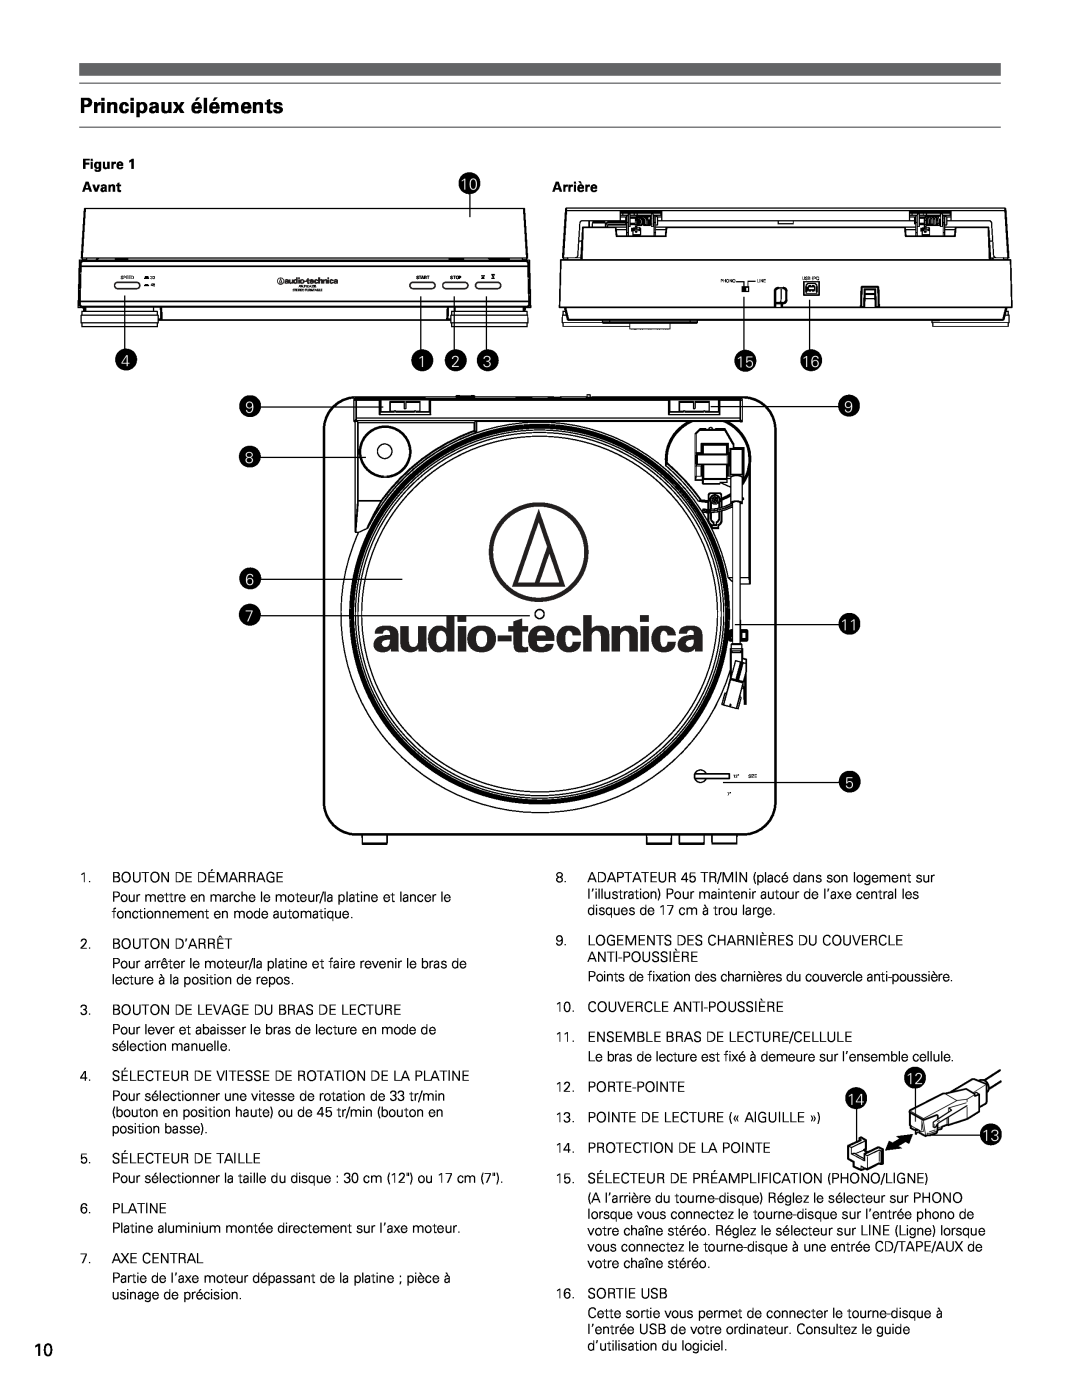 Audio-Technica AT-LP60-USB manual Principaux éléments, Avant 